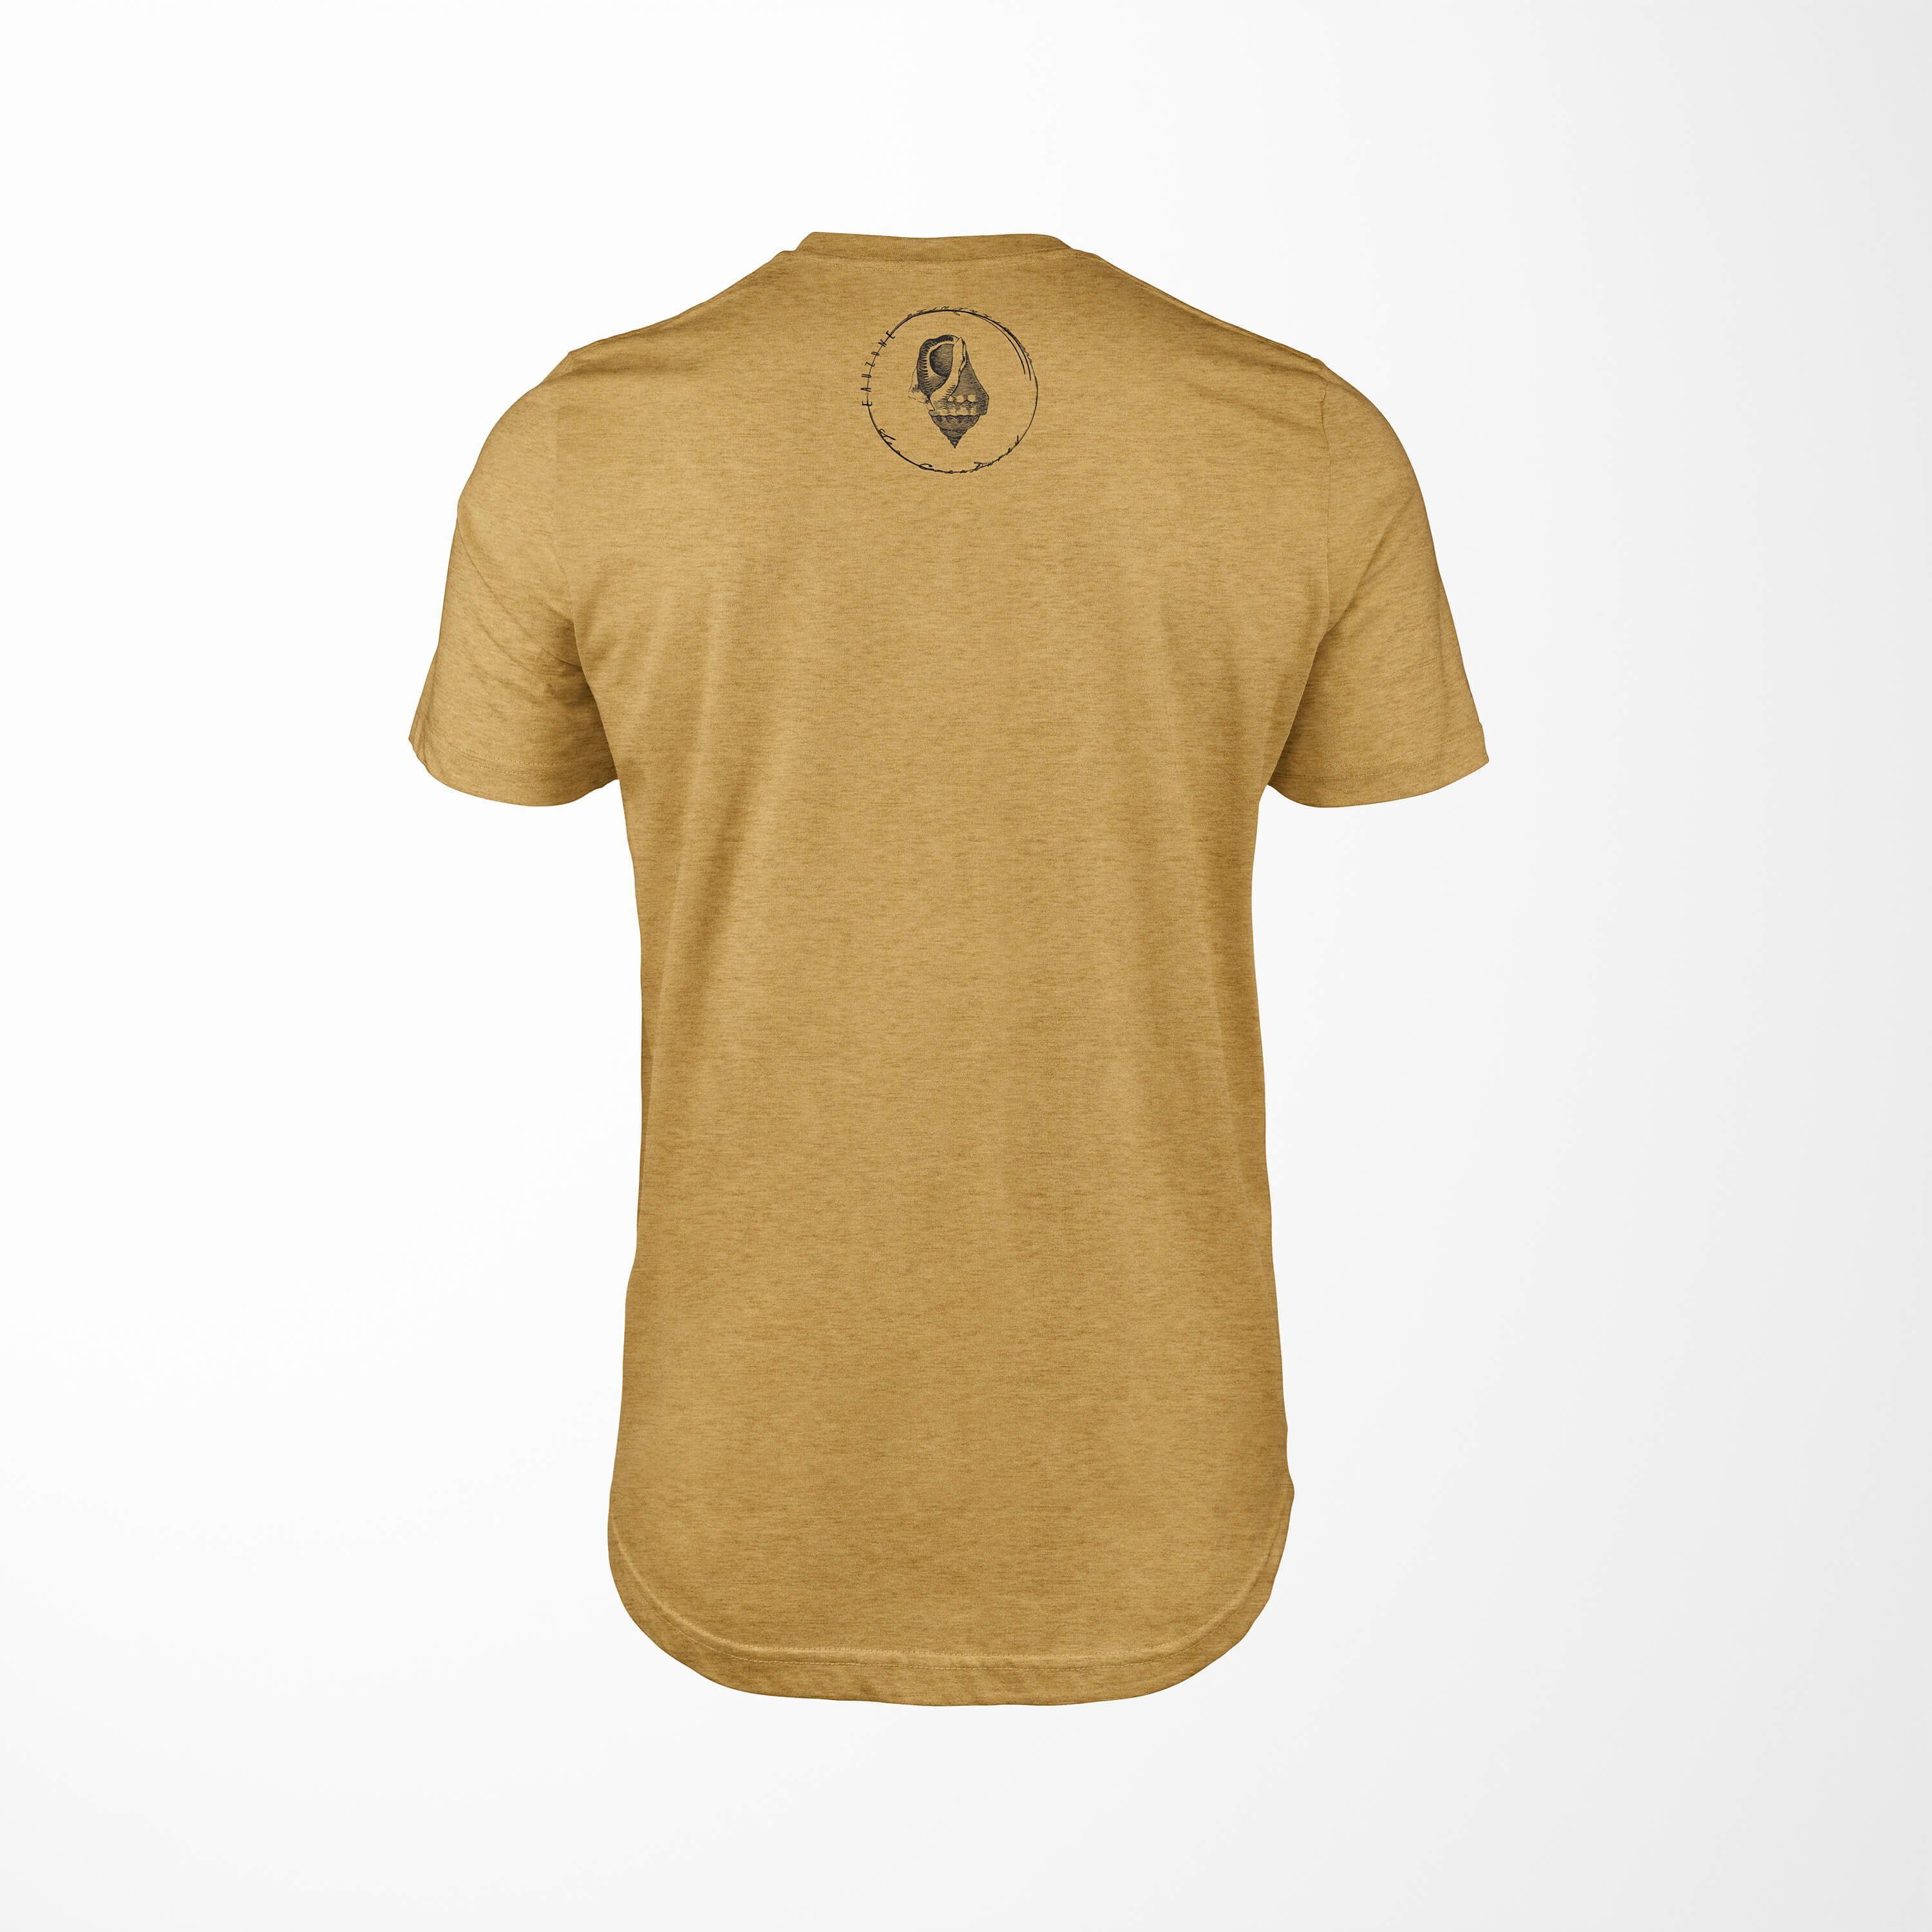 Sinus Art T-Shirt T-Shirt Tiefsee Gold Sea Sea Schnitt Serie: Creatures, Fische sportlicher 028 feine - Struktur / und Antique